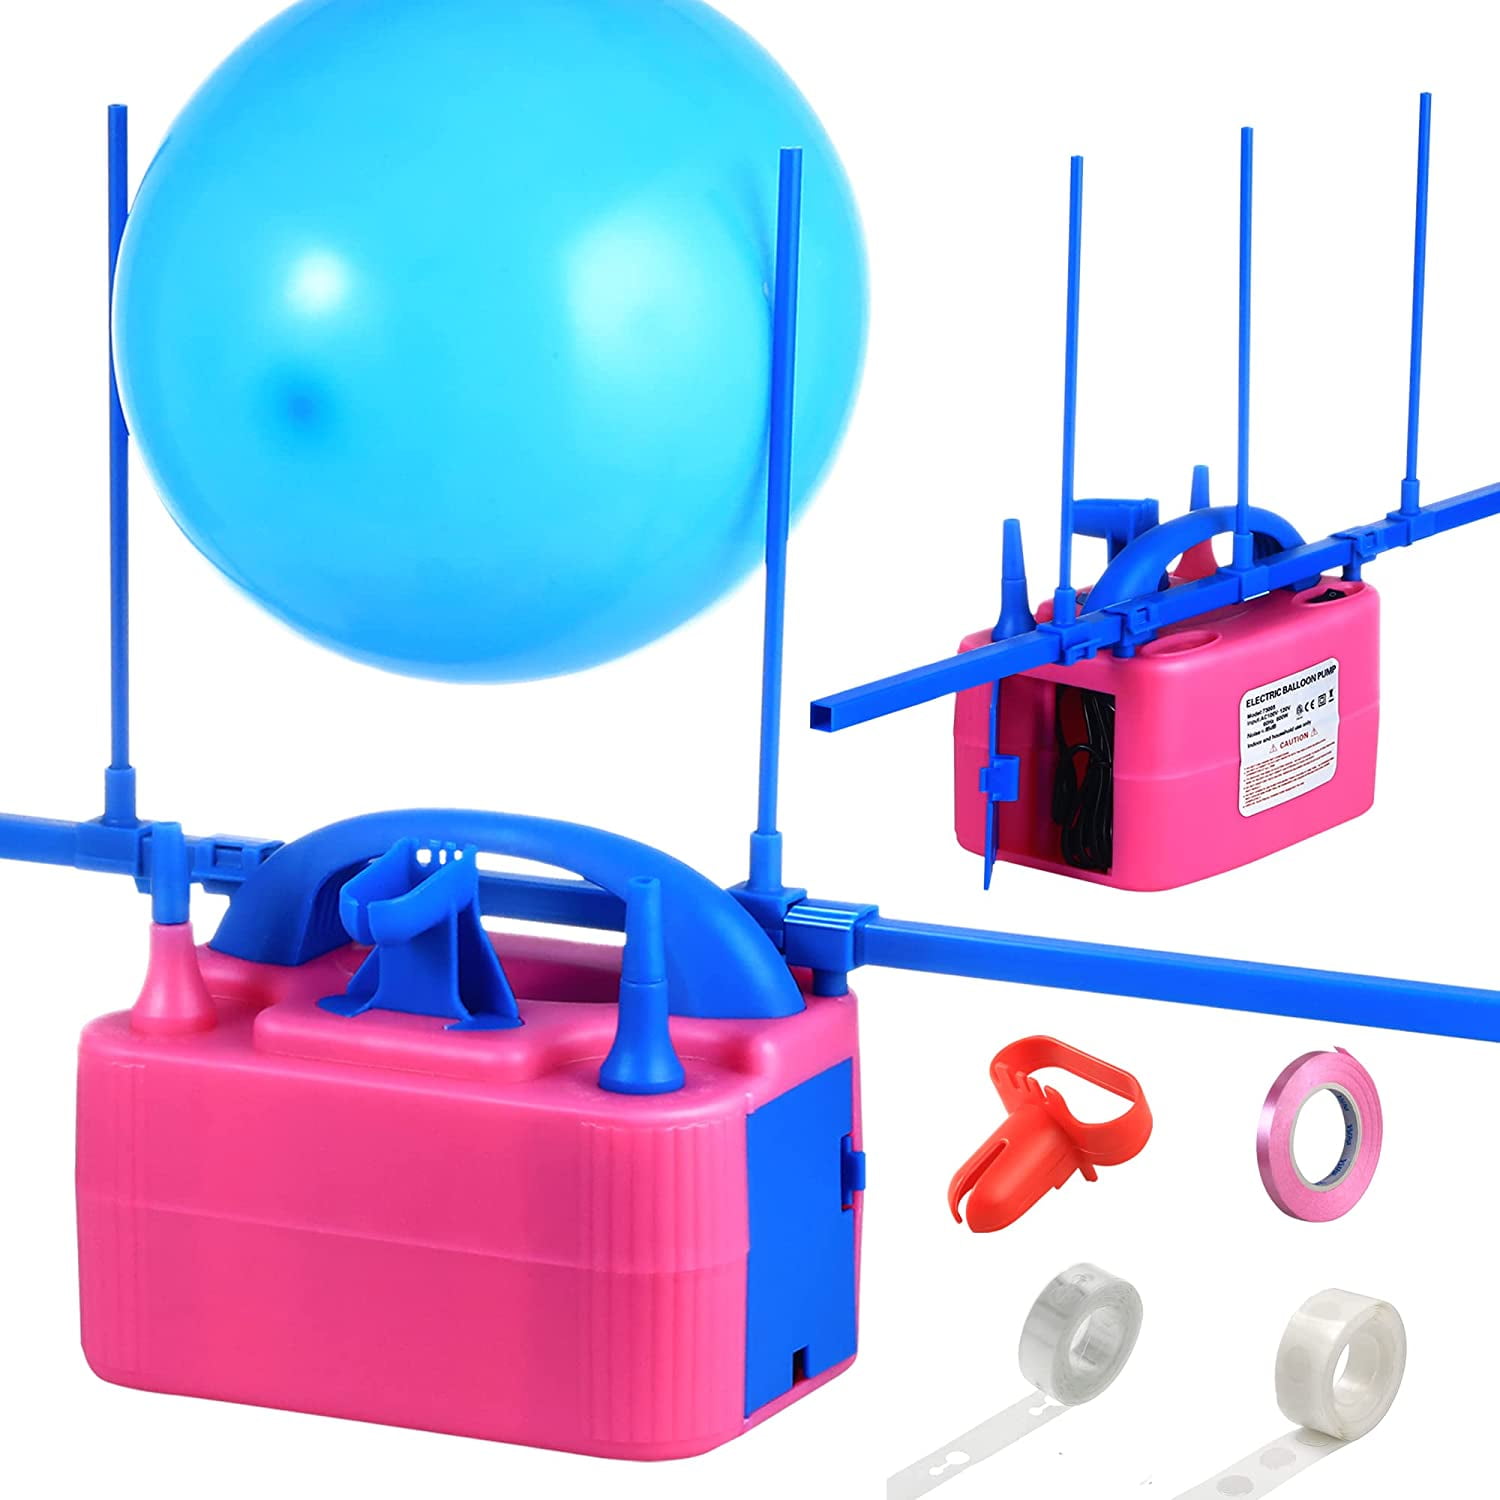 Для надувания воздушных шаров. Насос для надувания воздушных шаров. Электрический насос надувания для шарика. Воздуходувка для надувания мячей. Ветродую шар.